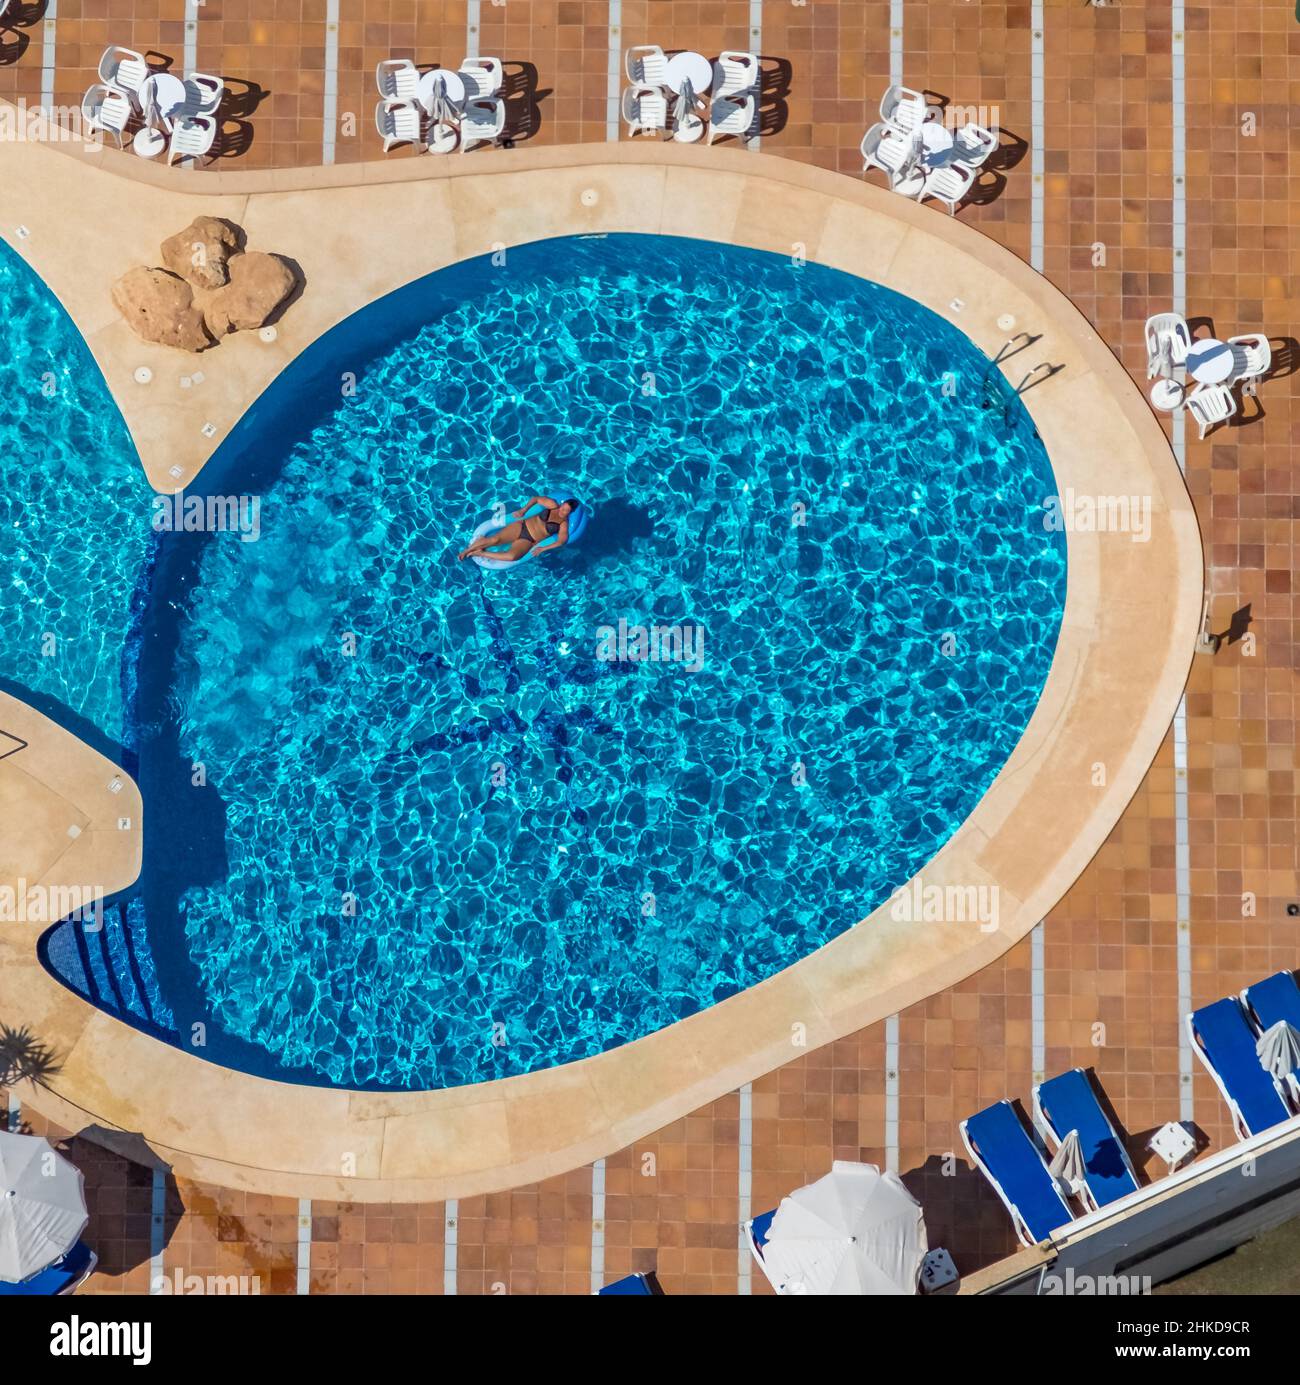 Vista aerea, piscina sul tetto dell'hotel Hotel Kilimanjaro, Mallorca, Isole Baleari, Spagna, ES, Europa, donna in piscina, hotel, strutture alberghiere, caldo Foto Stock